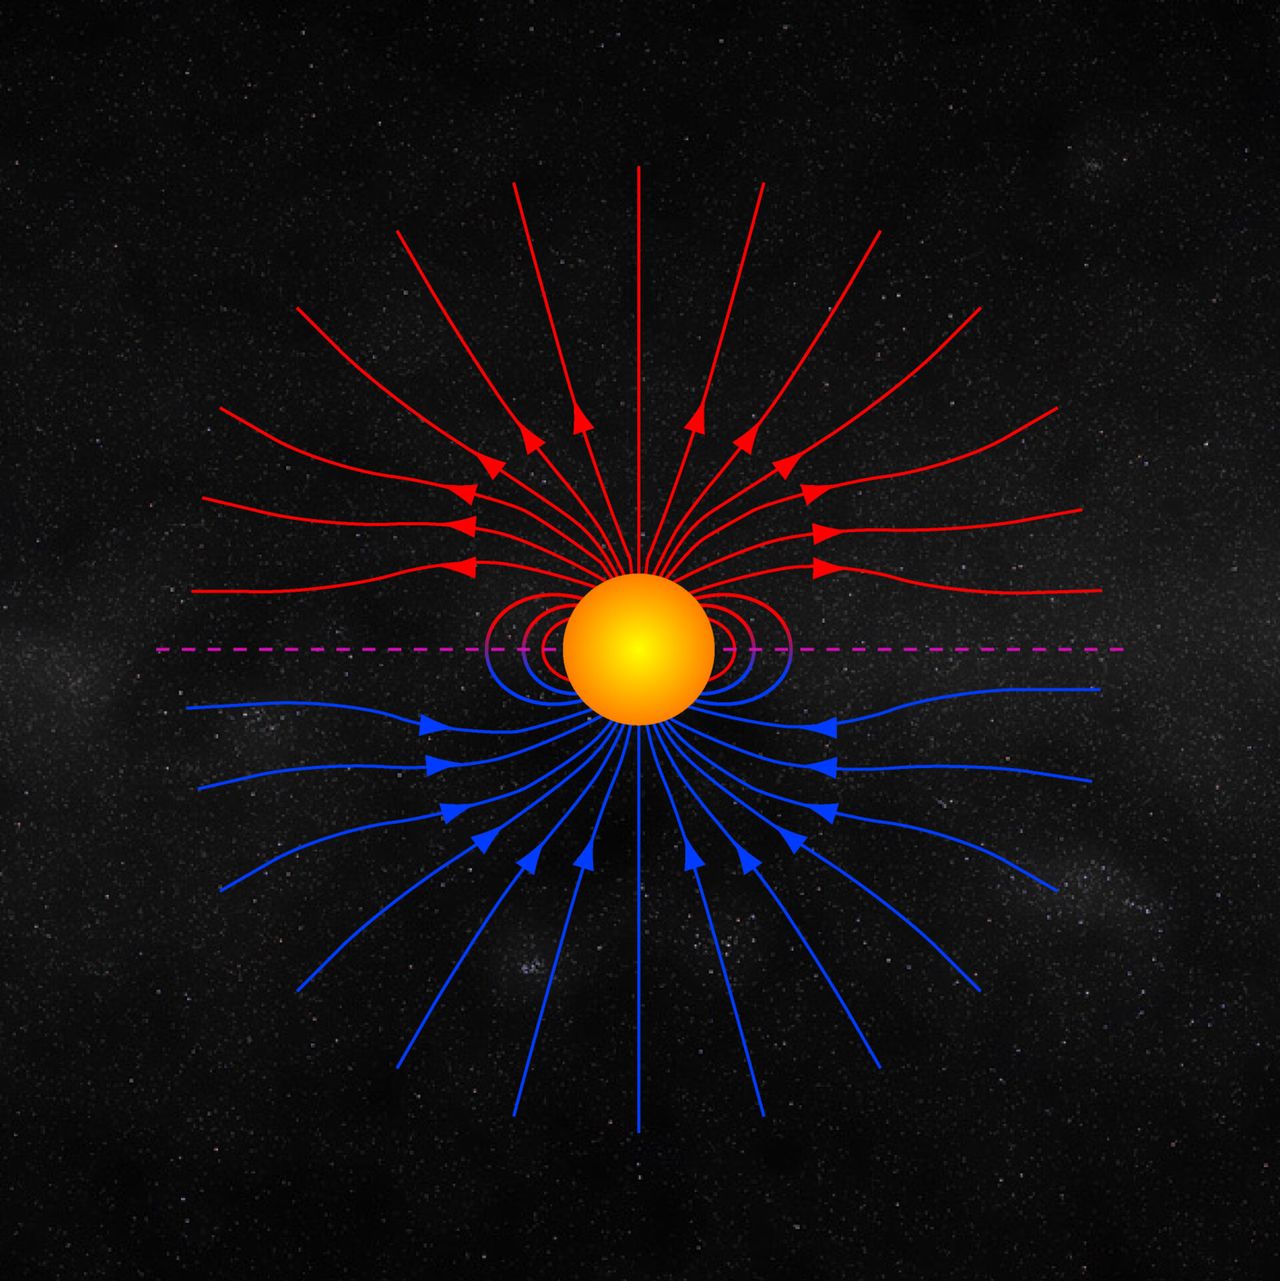 25 º ciclo de actividad solar el Sol despierta